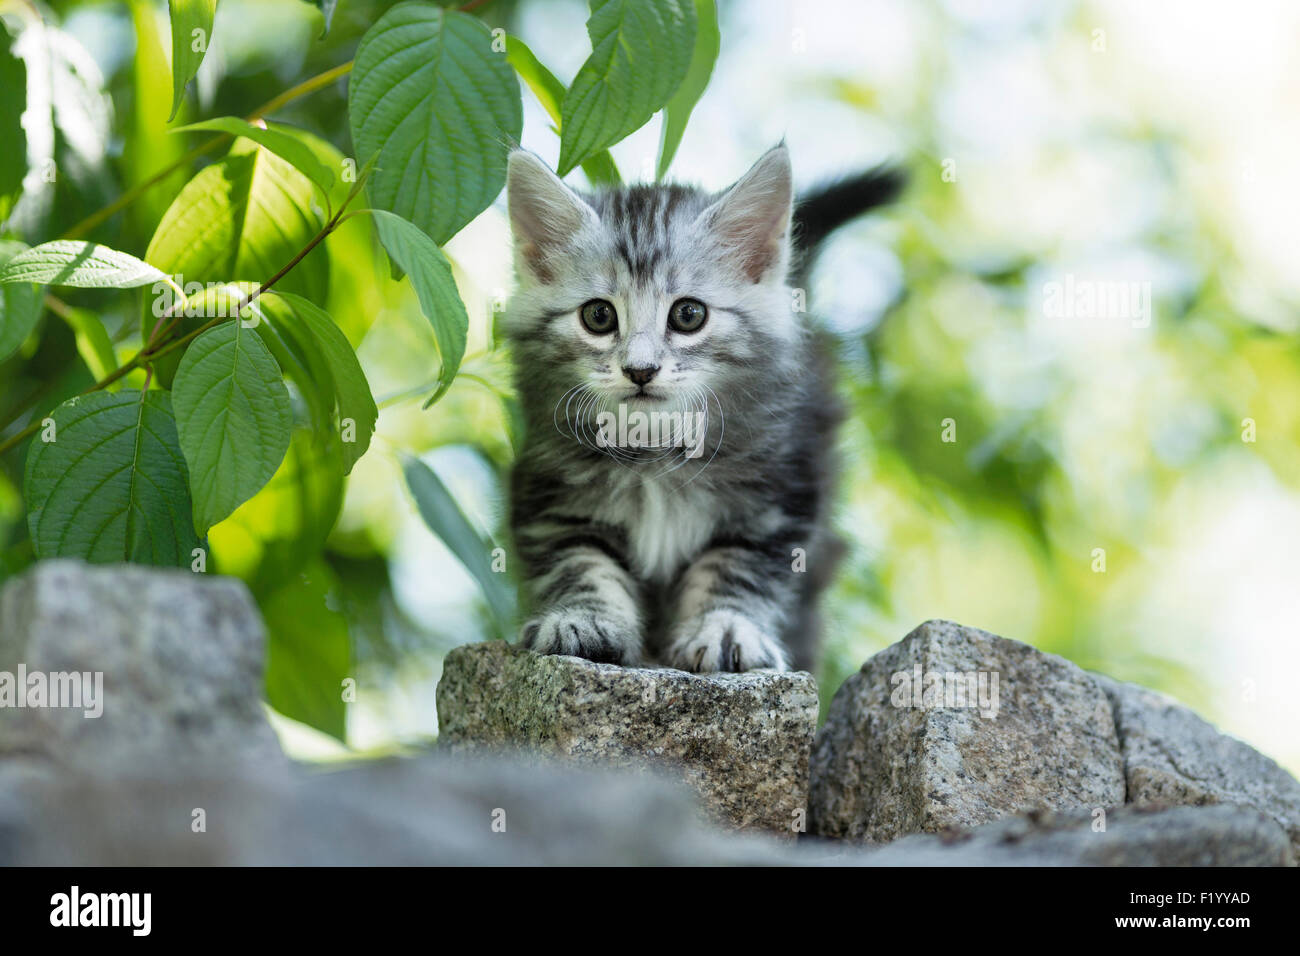 Norwegian Forest Cat Tabby kitten standing paving blocks Germany Stock Photo